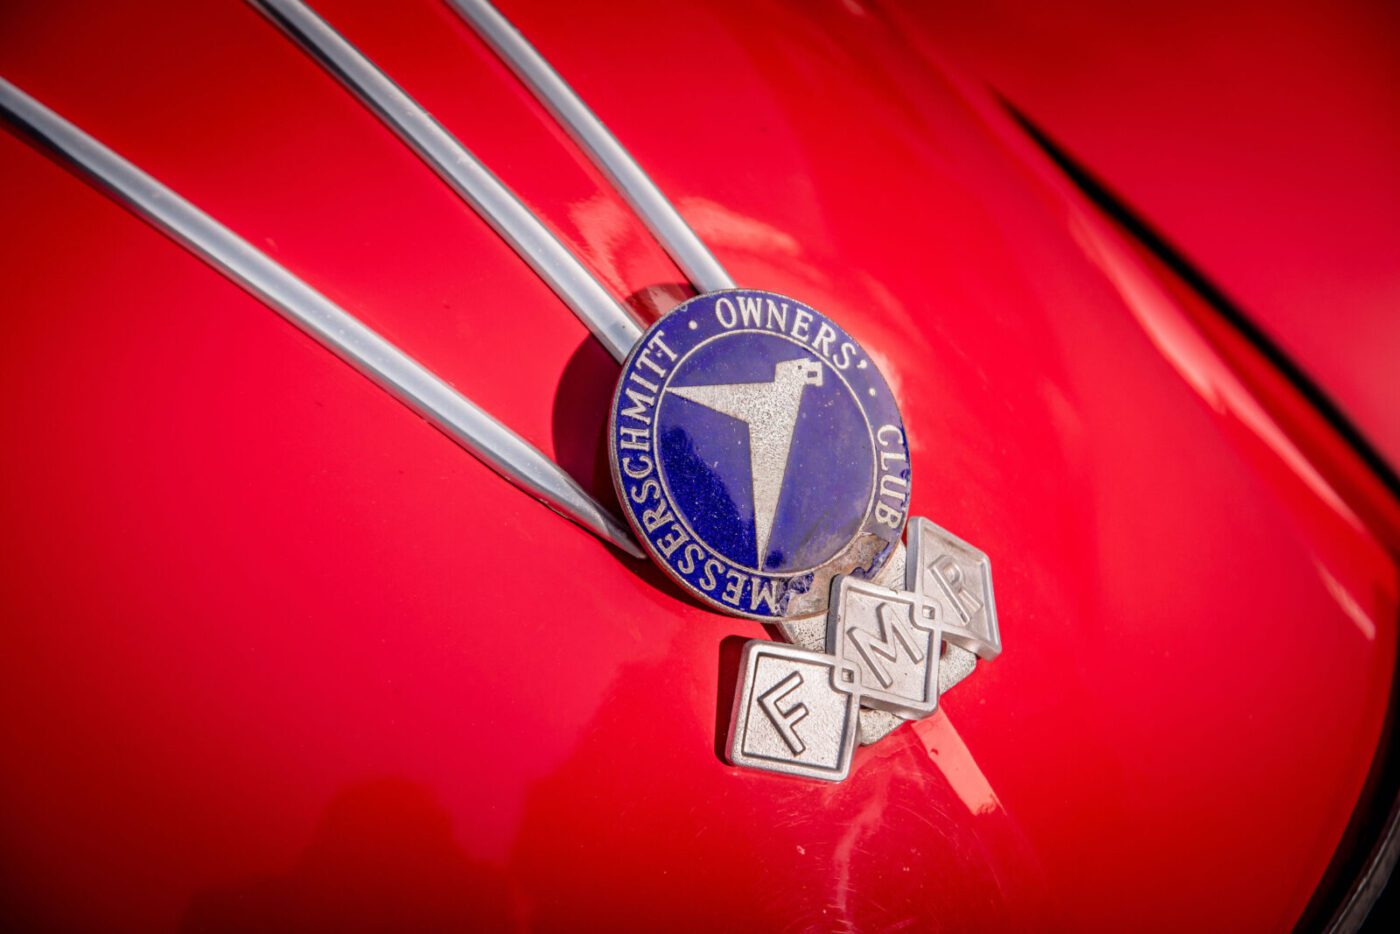 Messerschmitt KR200 badge